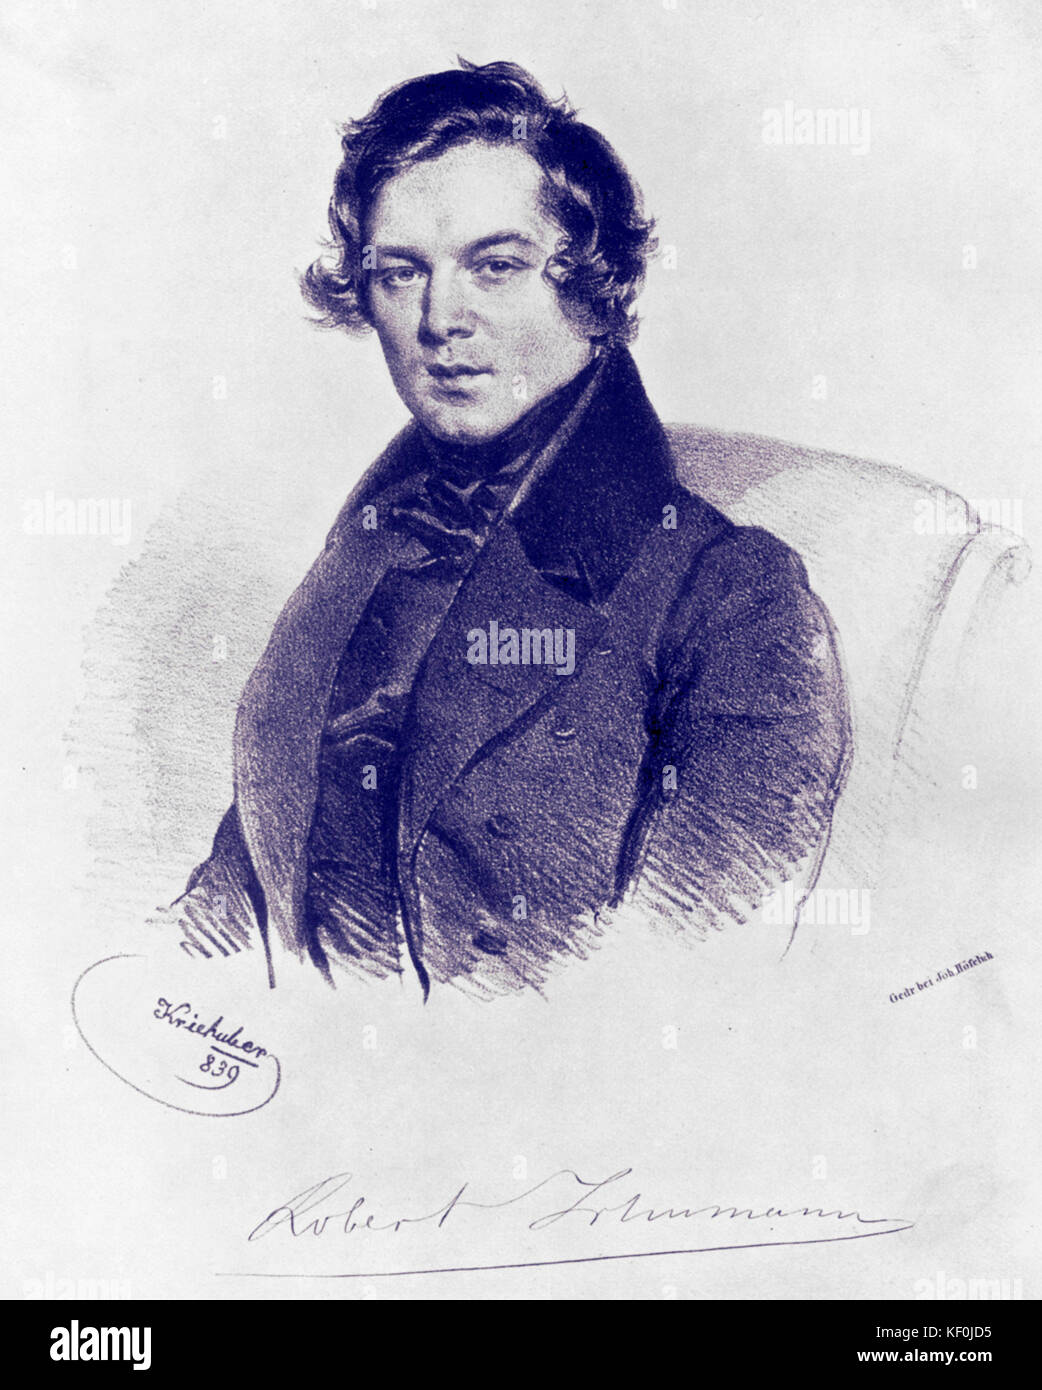 Robert Schumann, dessin de Joseph Kriehuber -signé par le compositeur. Compositeur allemand, 1810-1856. Banque D'Images